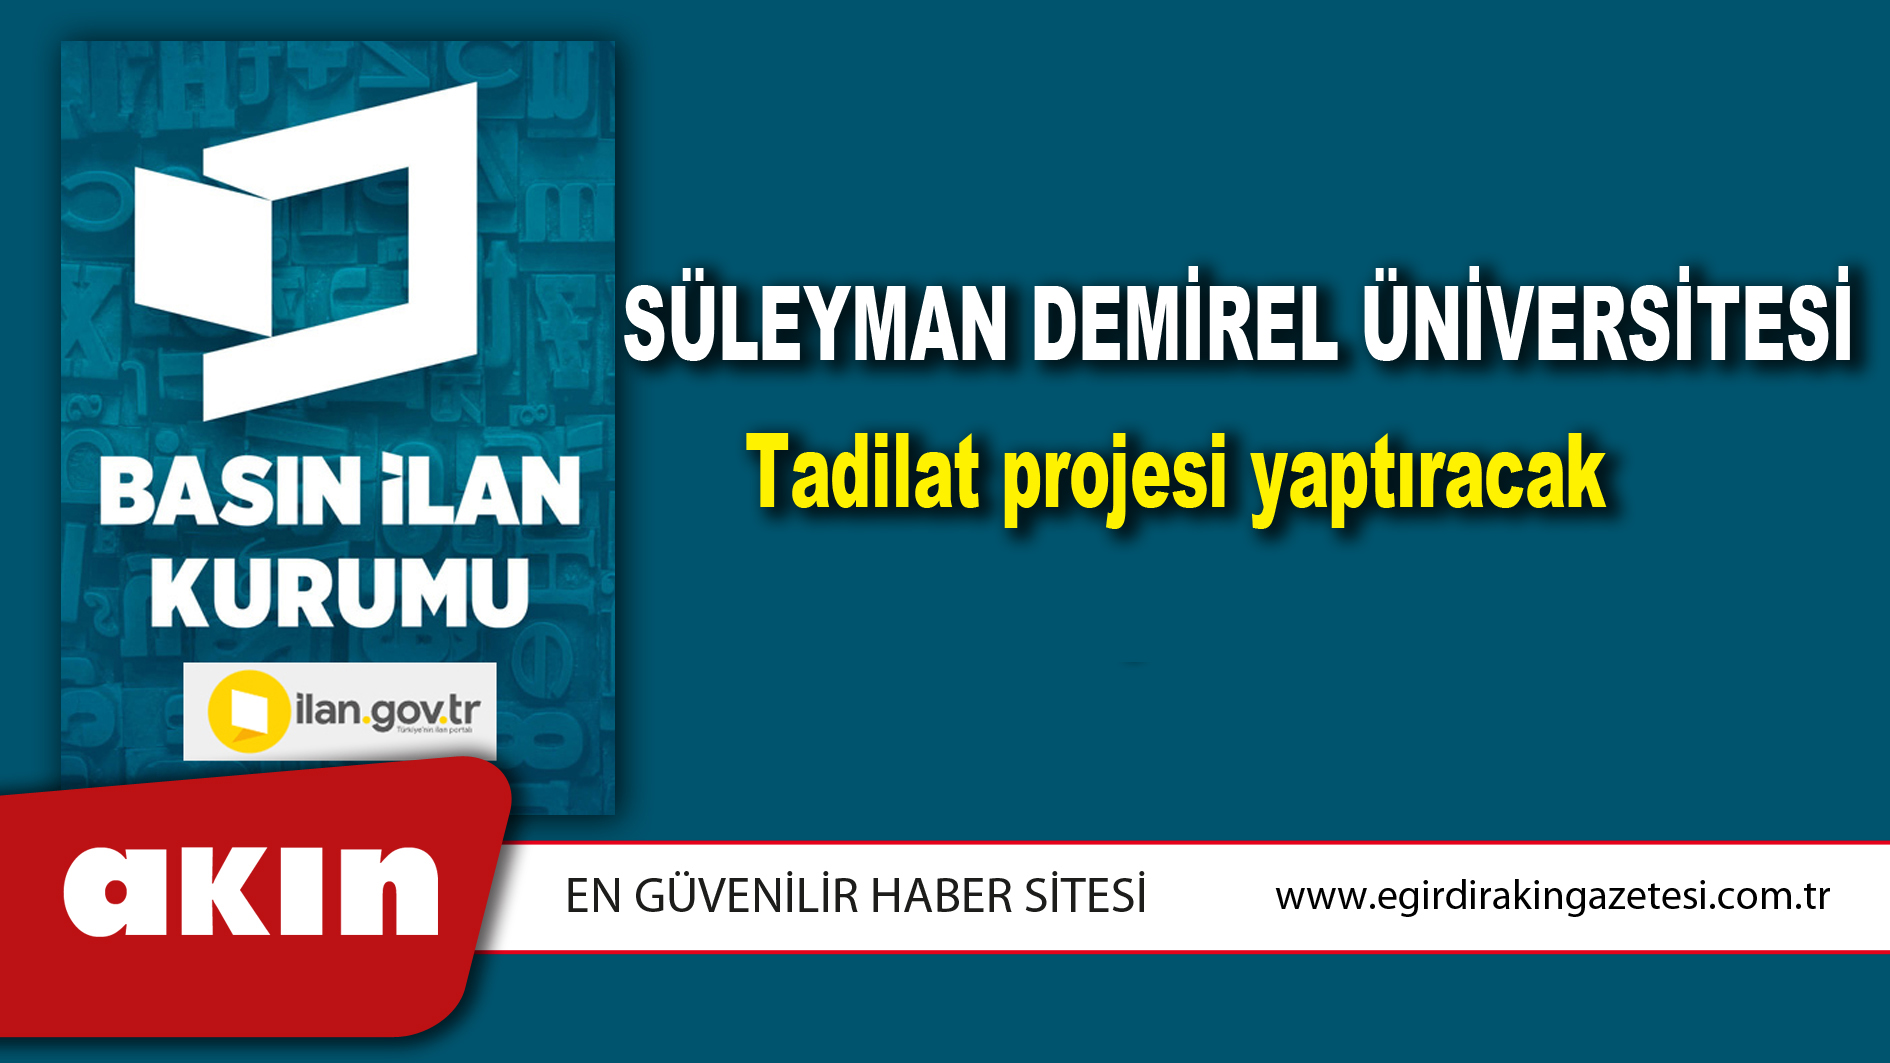 eğirdir haber,akın gazetesi,egirdir haberler,son dakika,Süleyman Demirel Üniversitesi Tadilat projesi yaptıracak